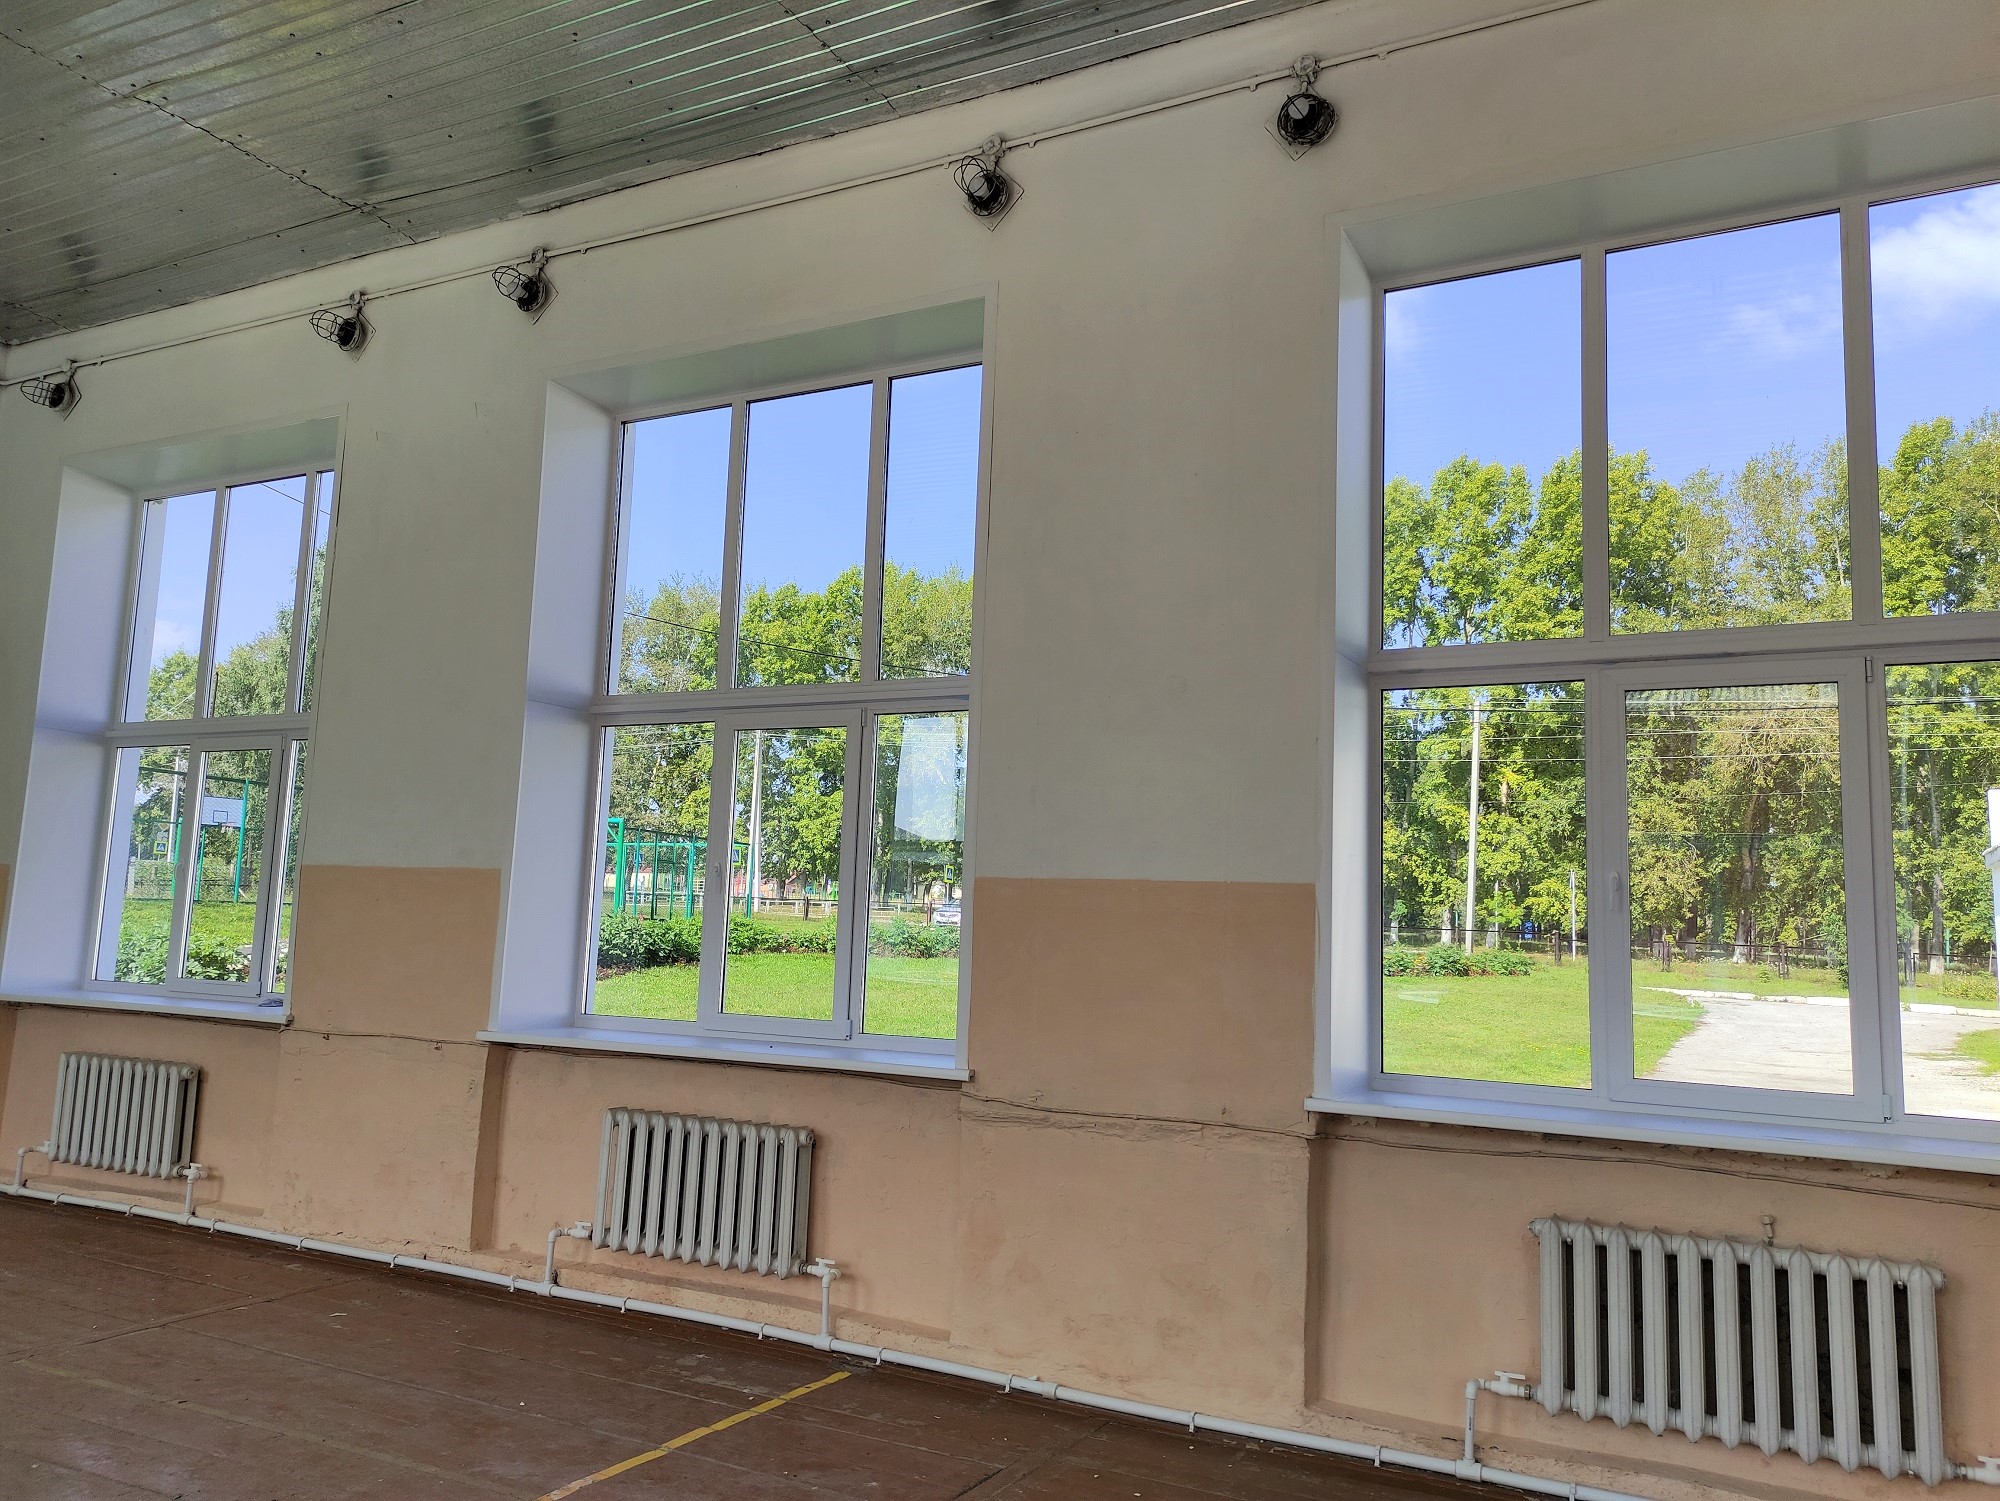 Новые пластиковые окна установил в Урской школе разрез Шестаки. Стройсервис